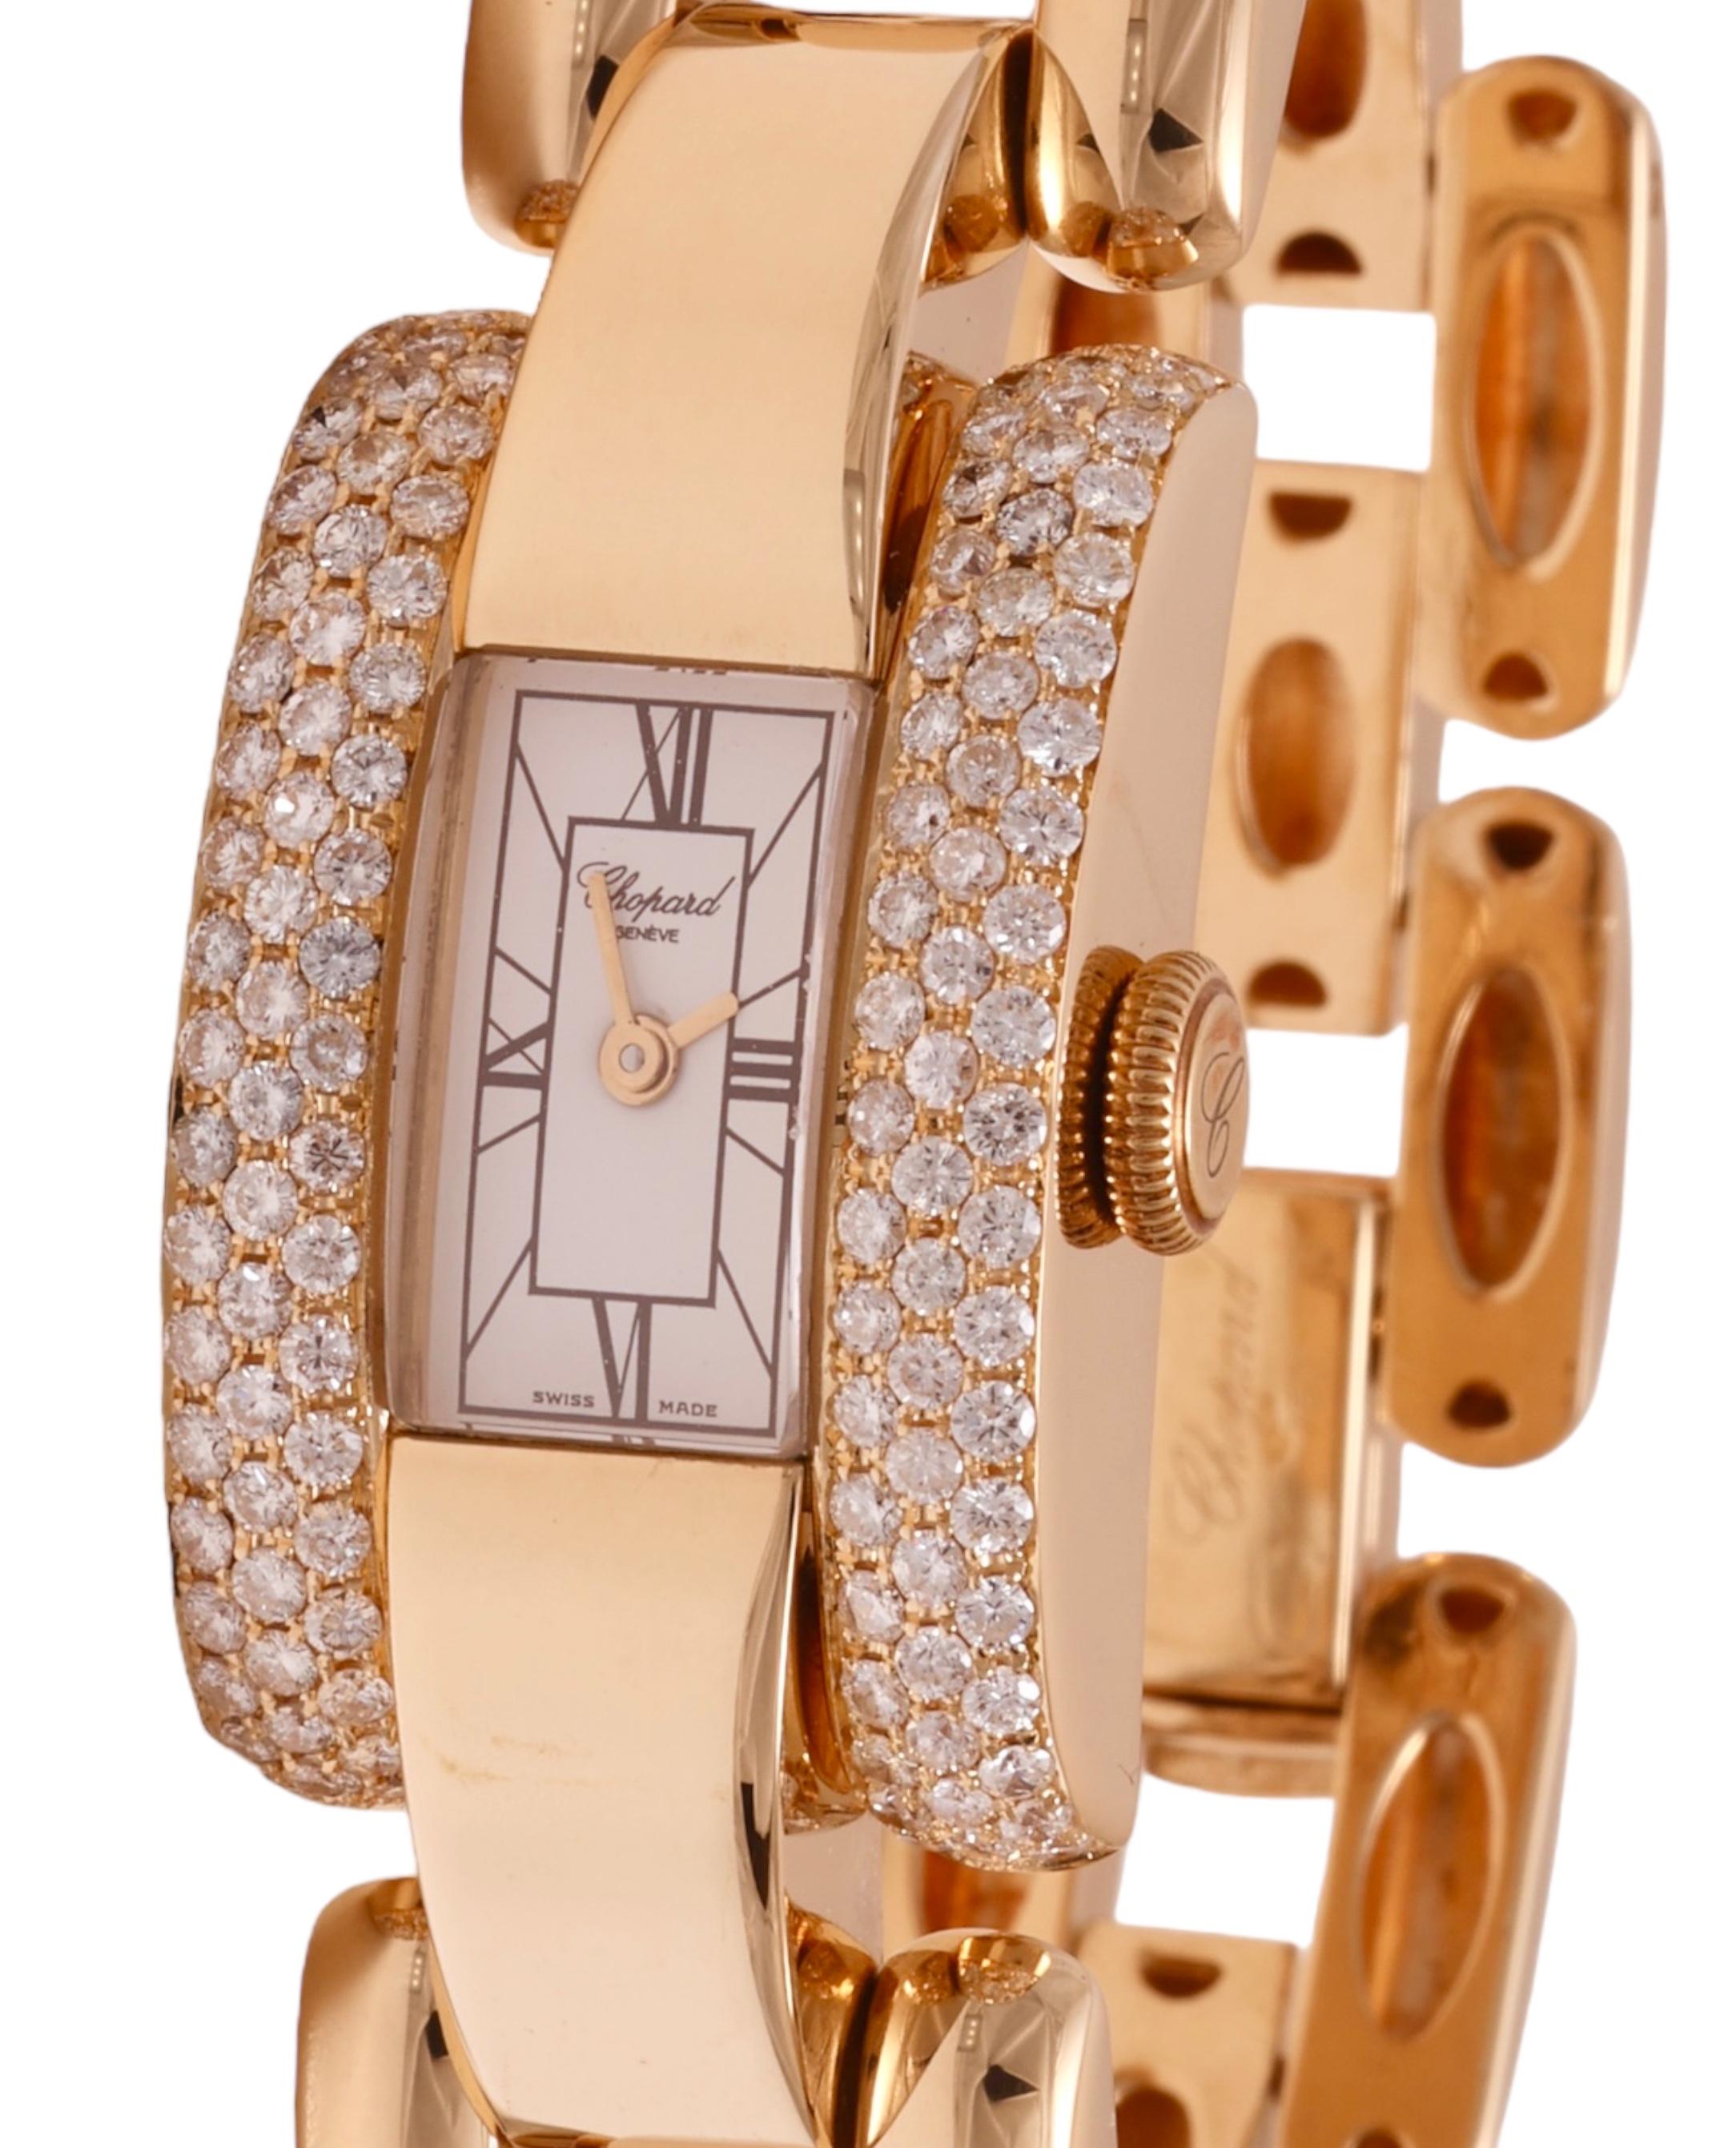 18 Kt. Gold & Diamonds Chopard La Strada Wrist Watch For Sale 4